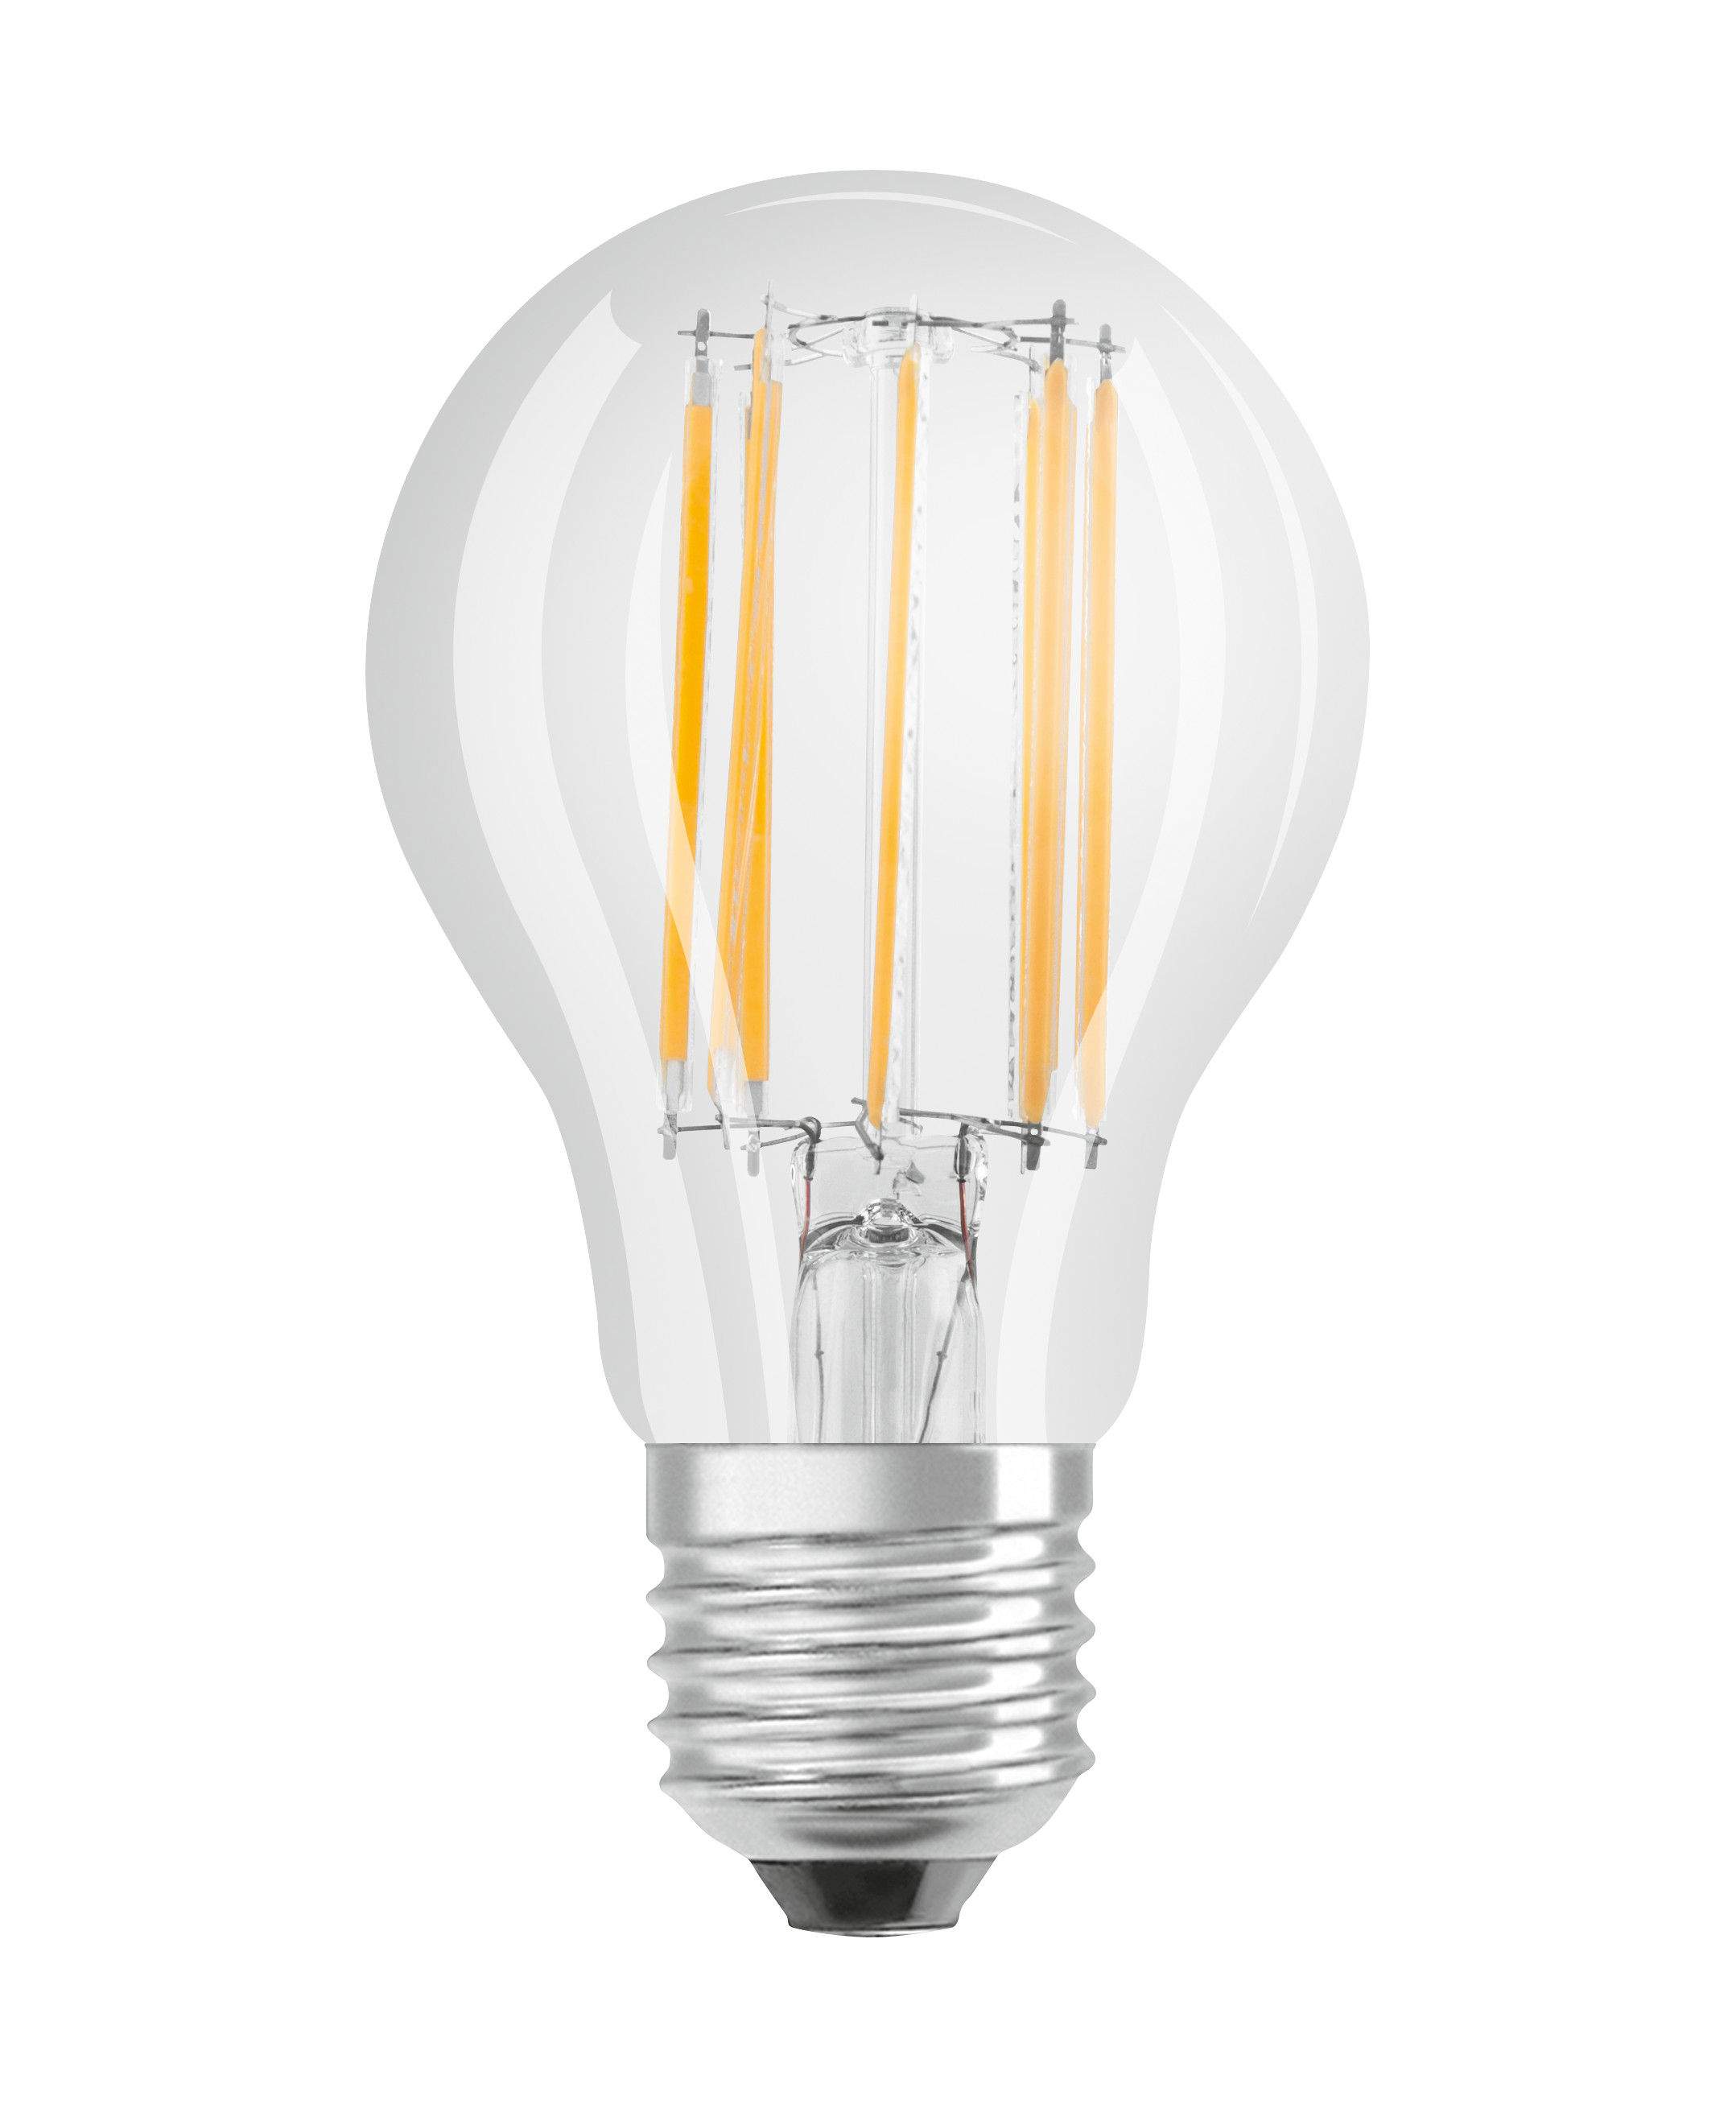 Ampoule LED verre transparent standard E27, 4W, blanc froid.